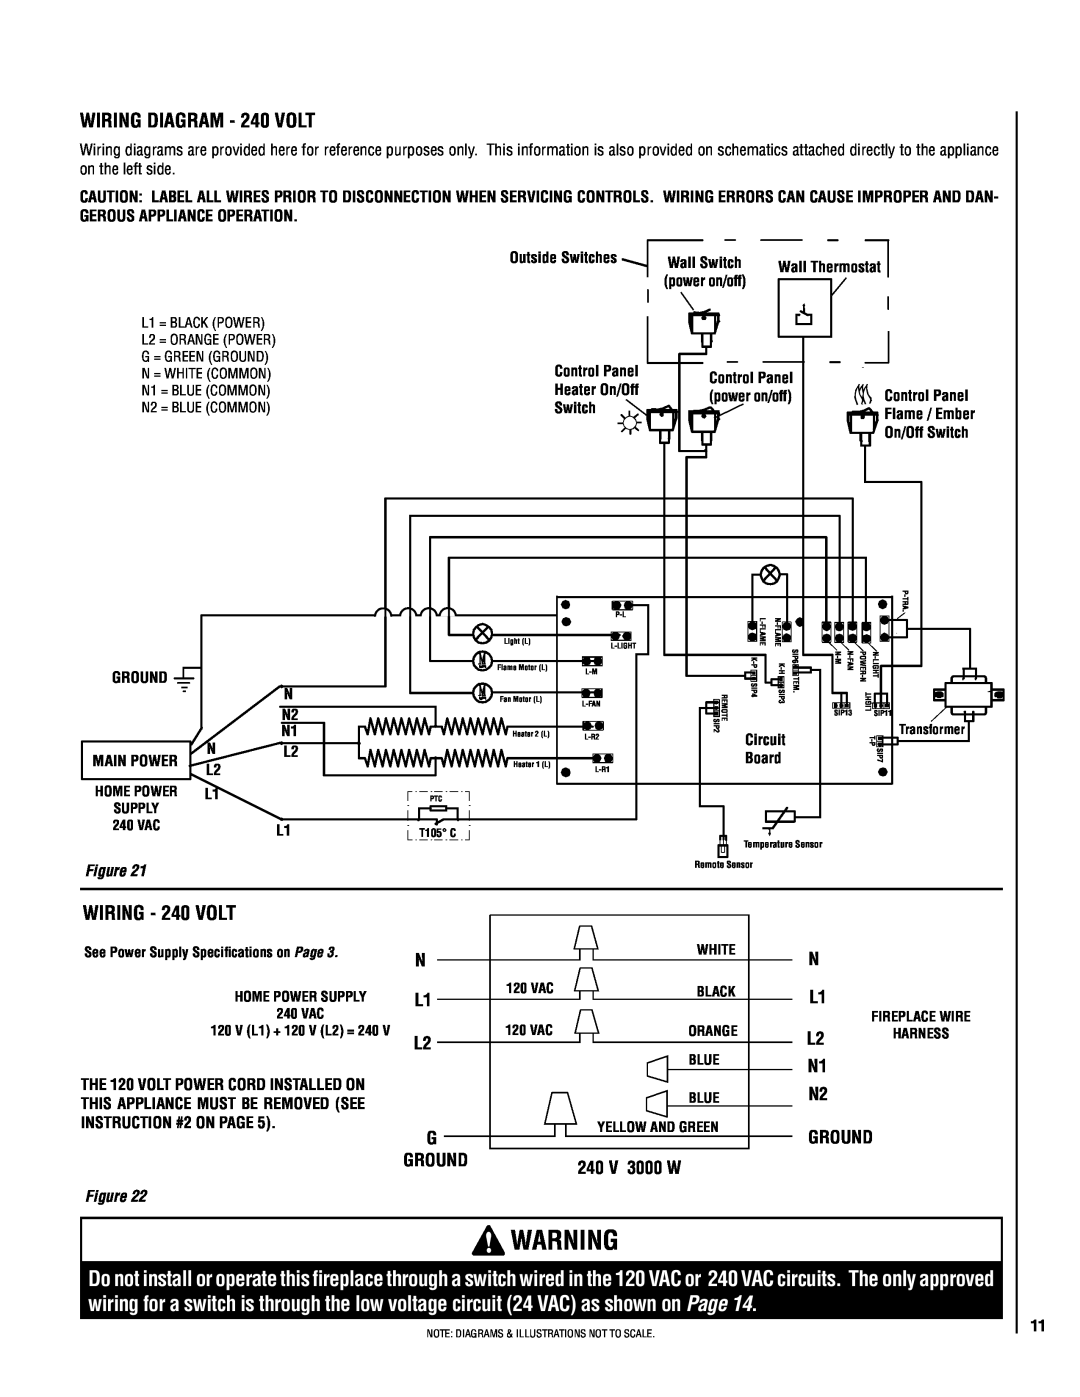 Lennox Hearth MPE-36R warranty WIRING - 240 volt, ground, 240 v 3000 w 